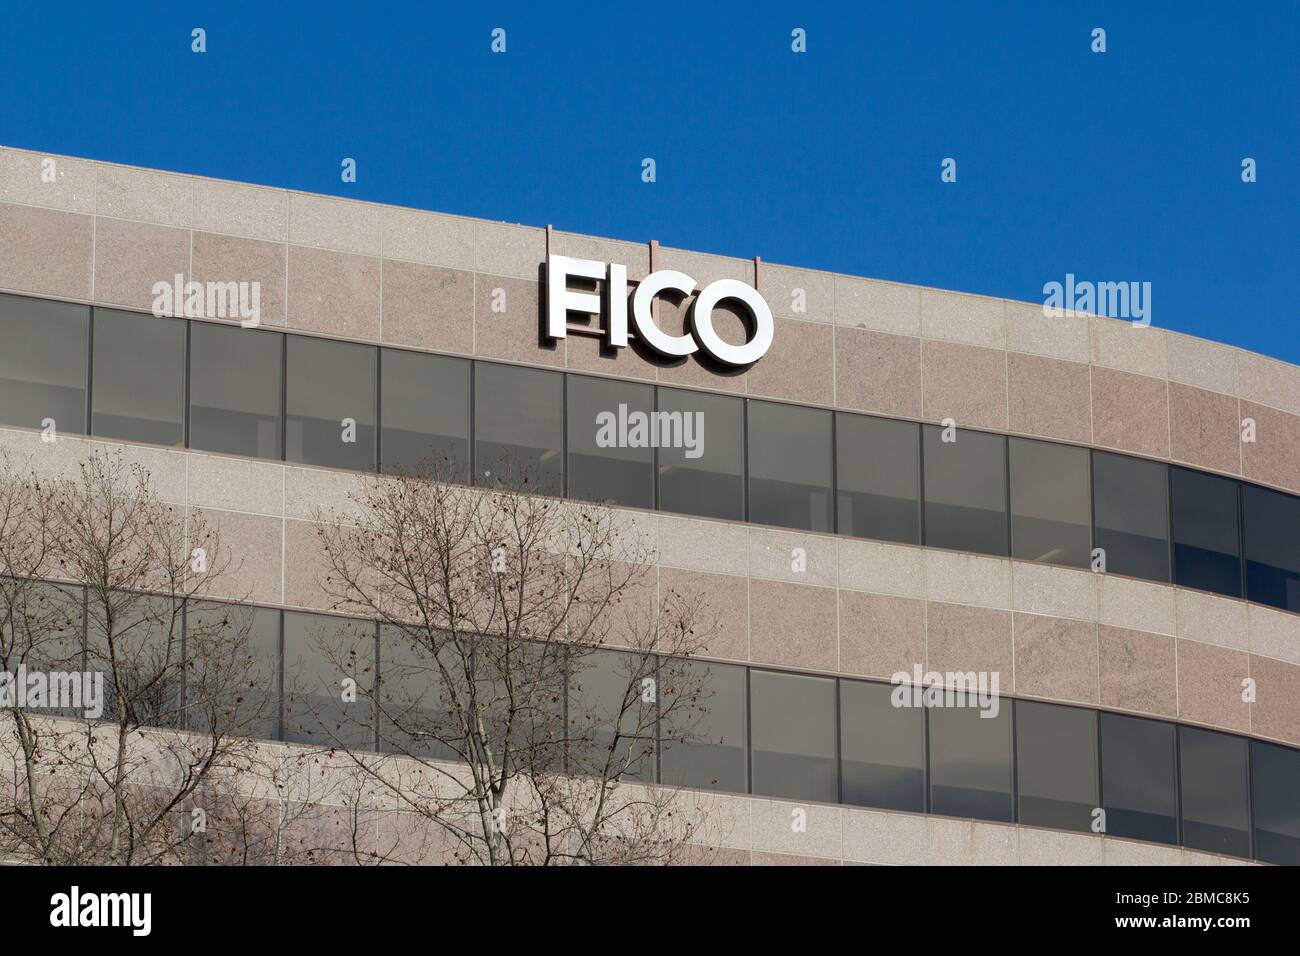 Das FICO-Zeichen wird am 12. Februar 2020 am Hauptsitz der American Data Analytics Company Fair Isaac Corporation (FICO) in San Jose, Kalifornien, gesehen. Stockfoto